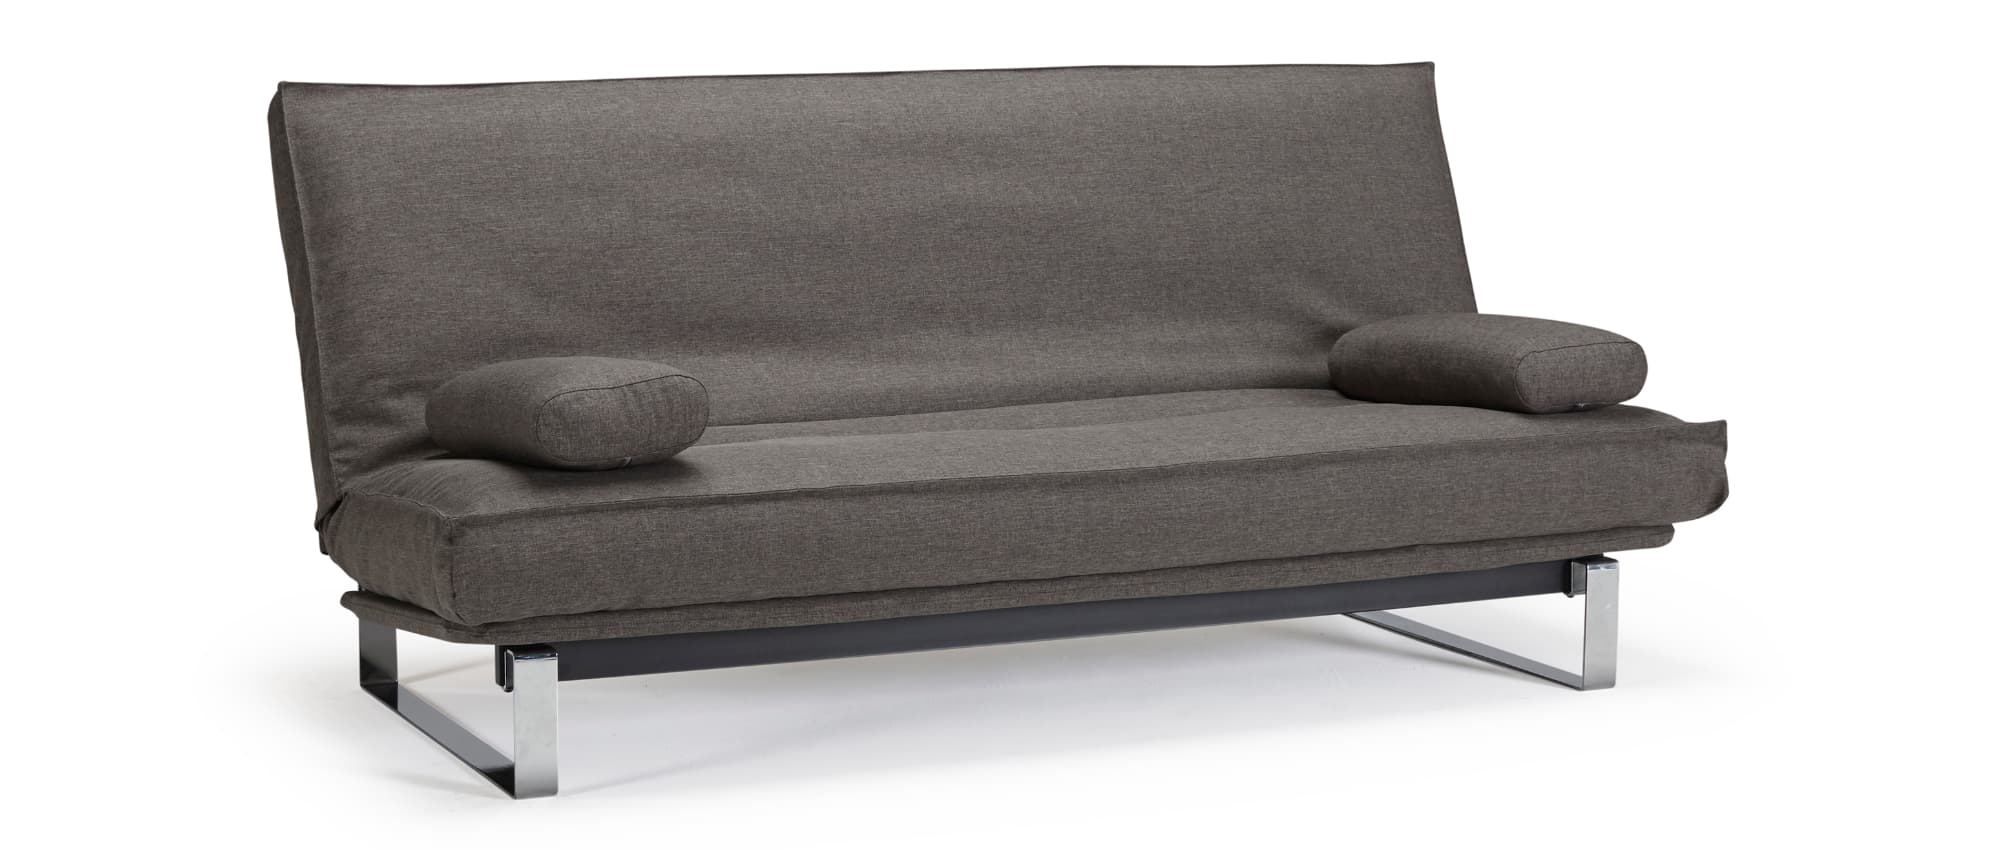 Schlafsofa MINIMUM von Innovation mit Chromkufen, Sofabett für jeden Tag, 2 Personen Dauerschläfer Sofa - Liegefläche 140x200 cm